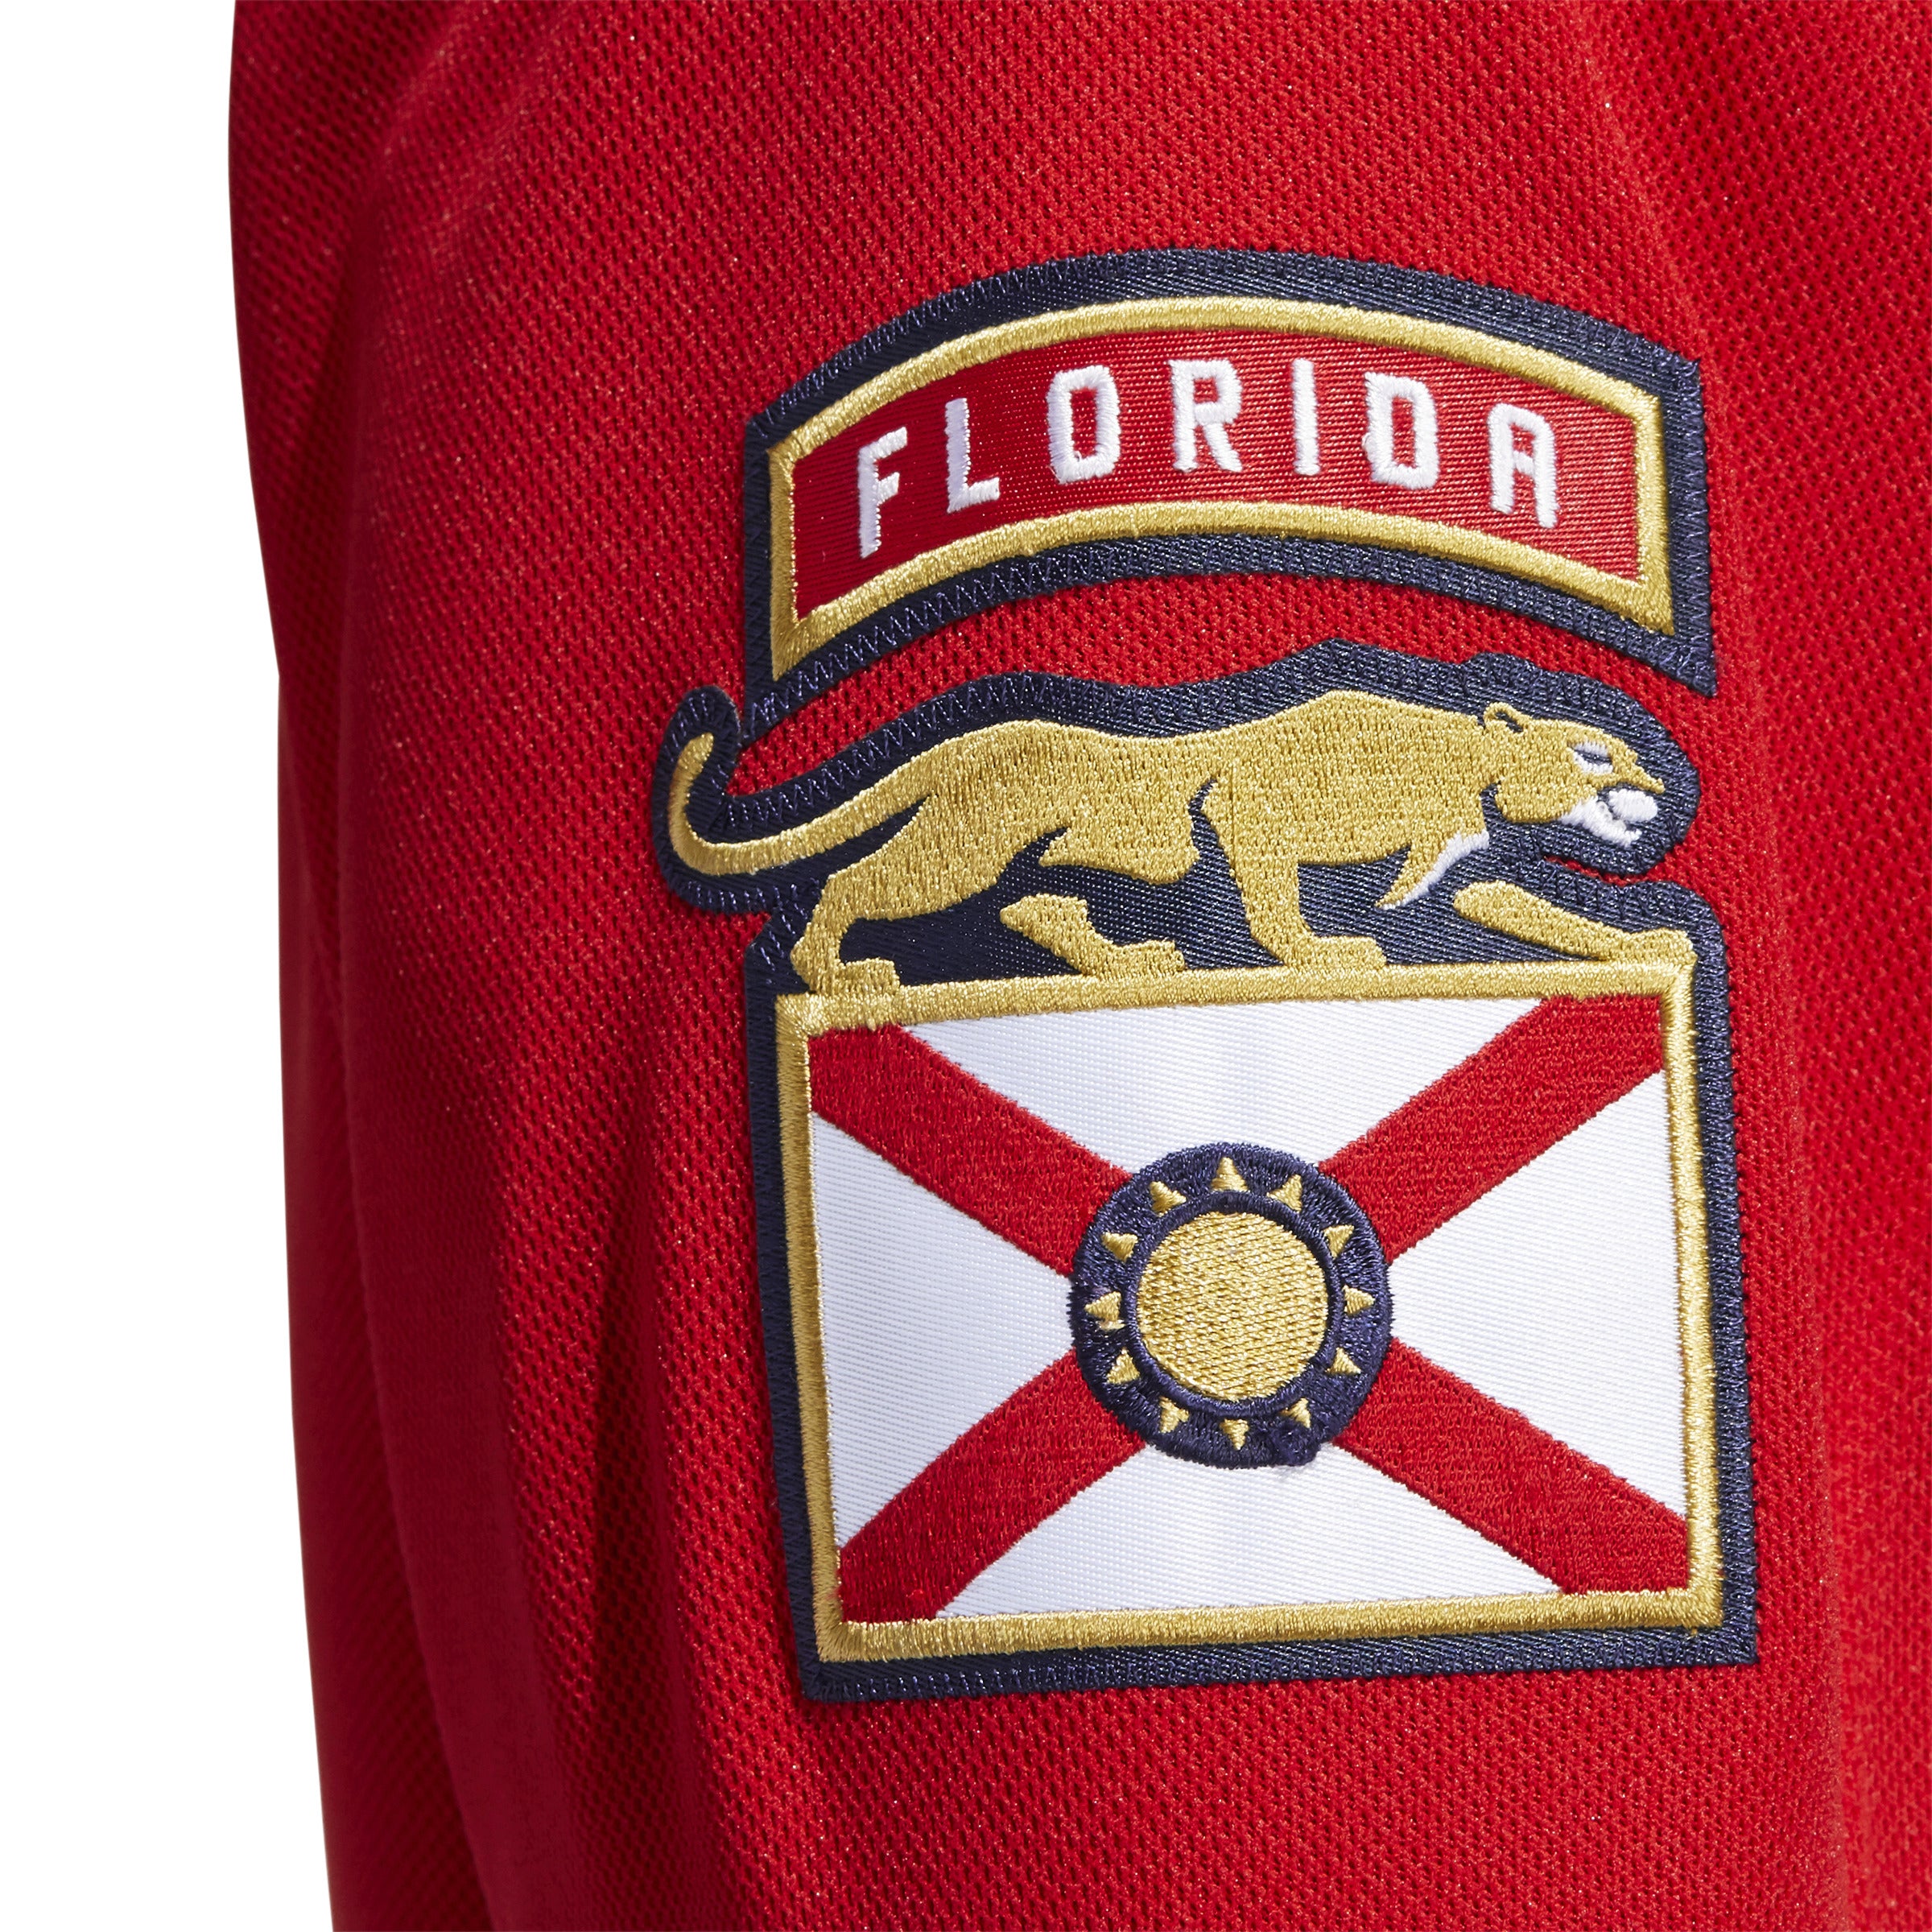 Florida Panthers Adidas Camo Military Appreciation Team Jersey 50 (M)